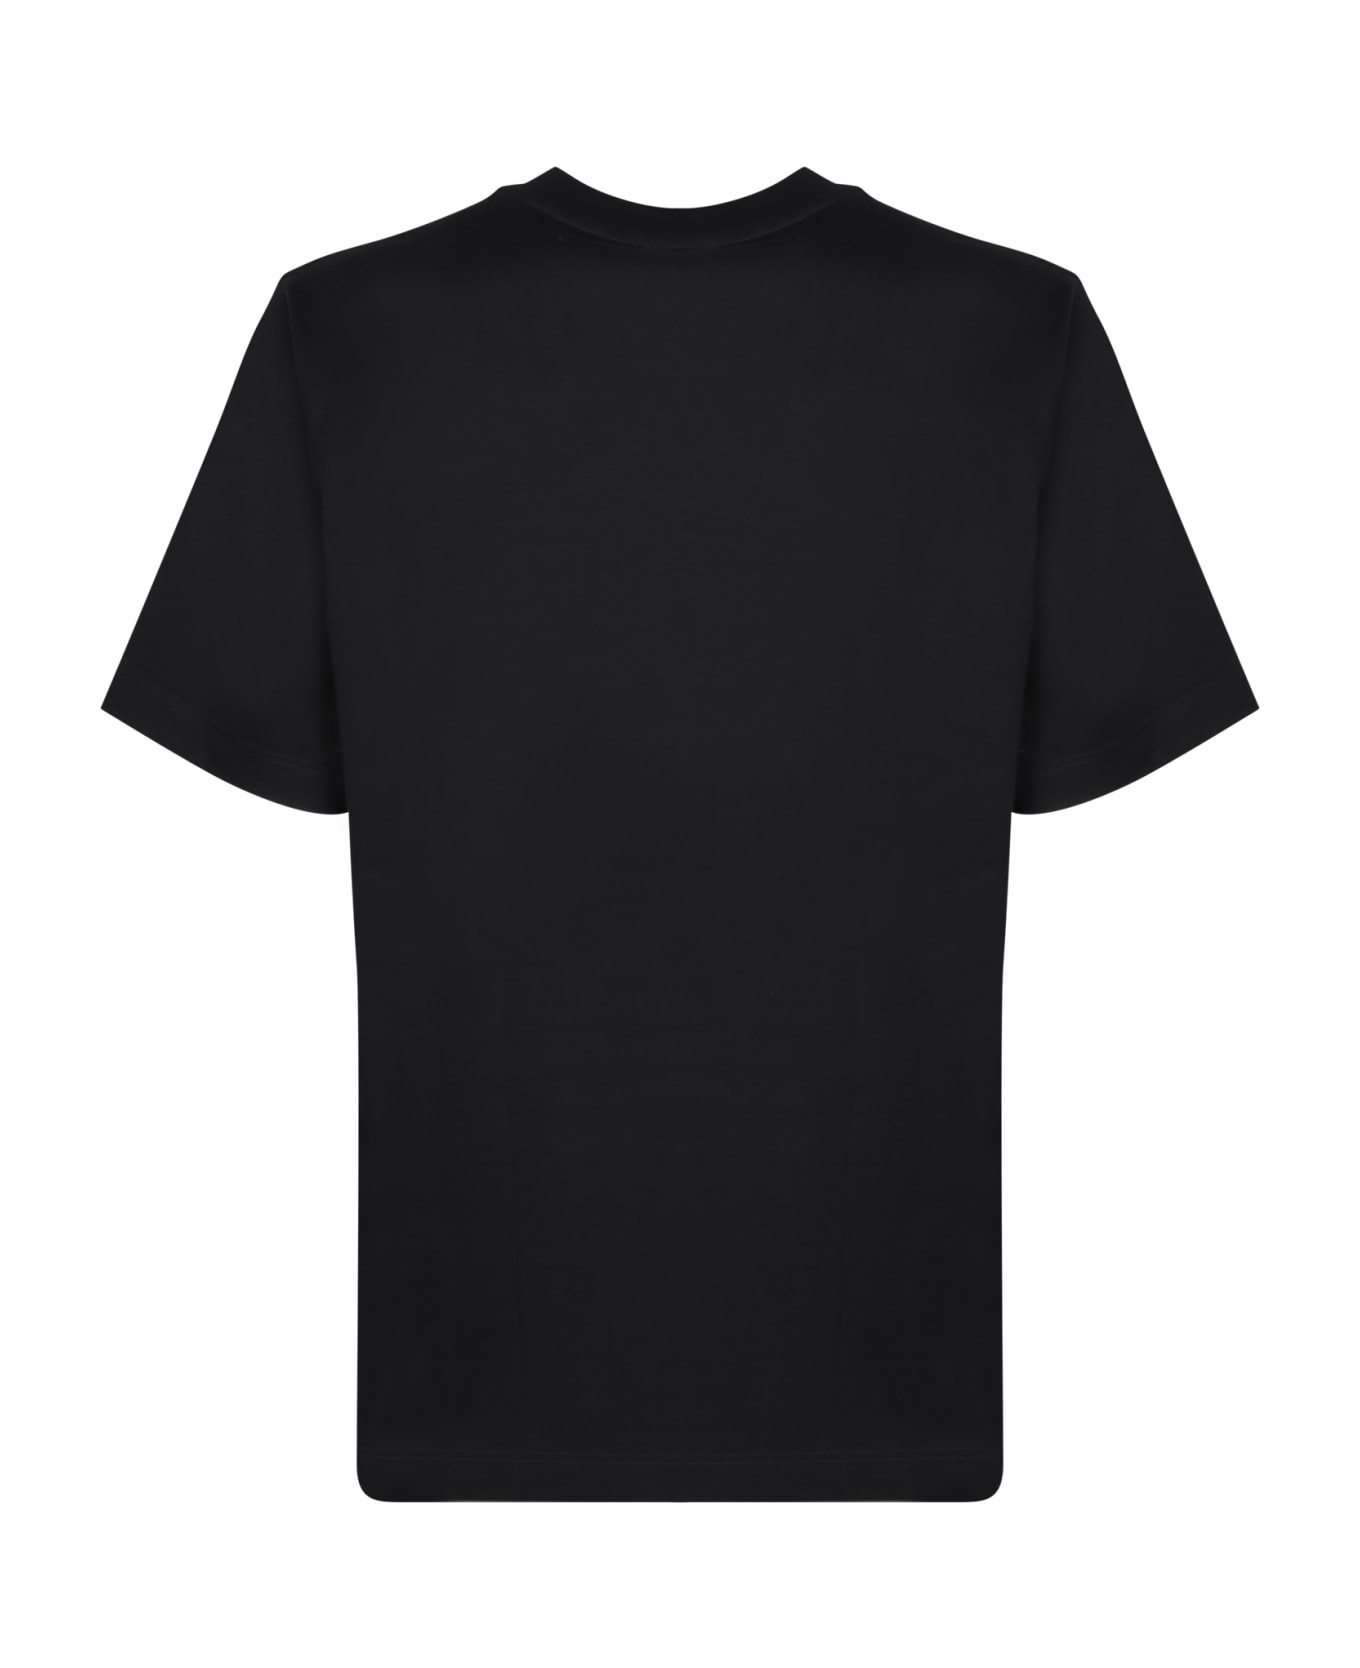 Giuseppe Zanotti Lr-58 Black T-shirt - Black